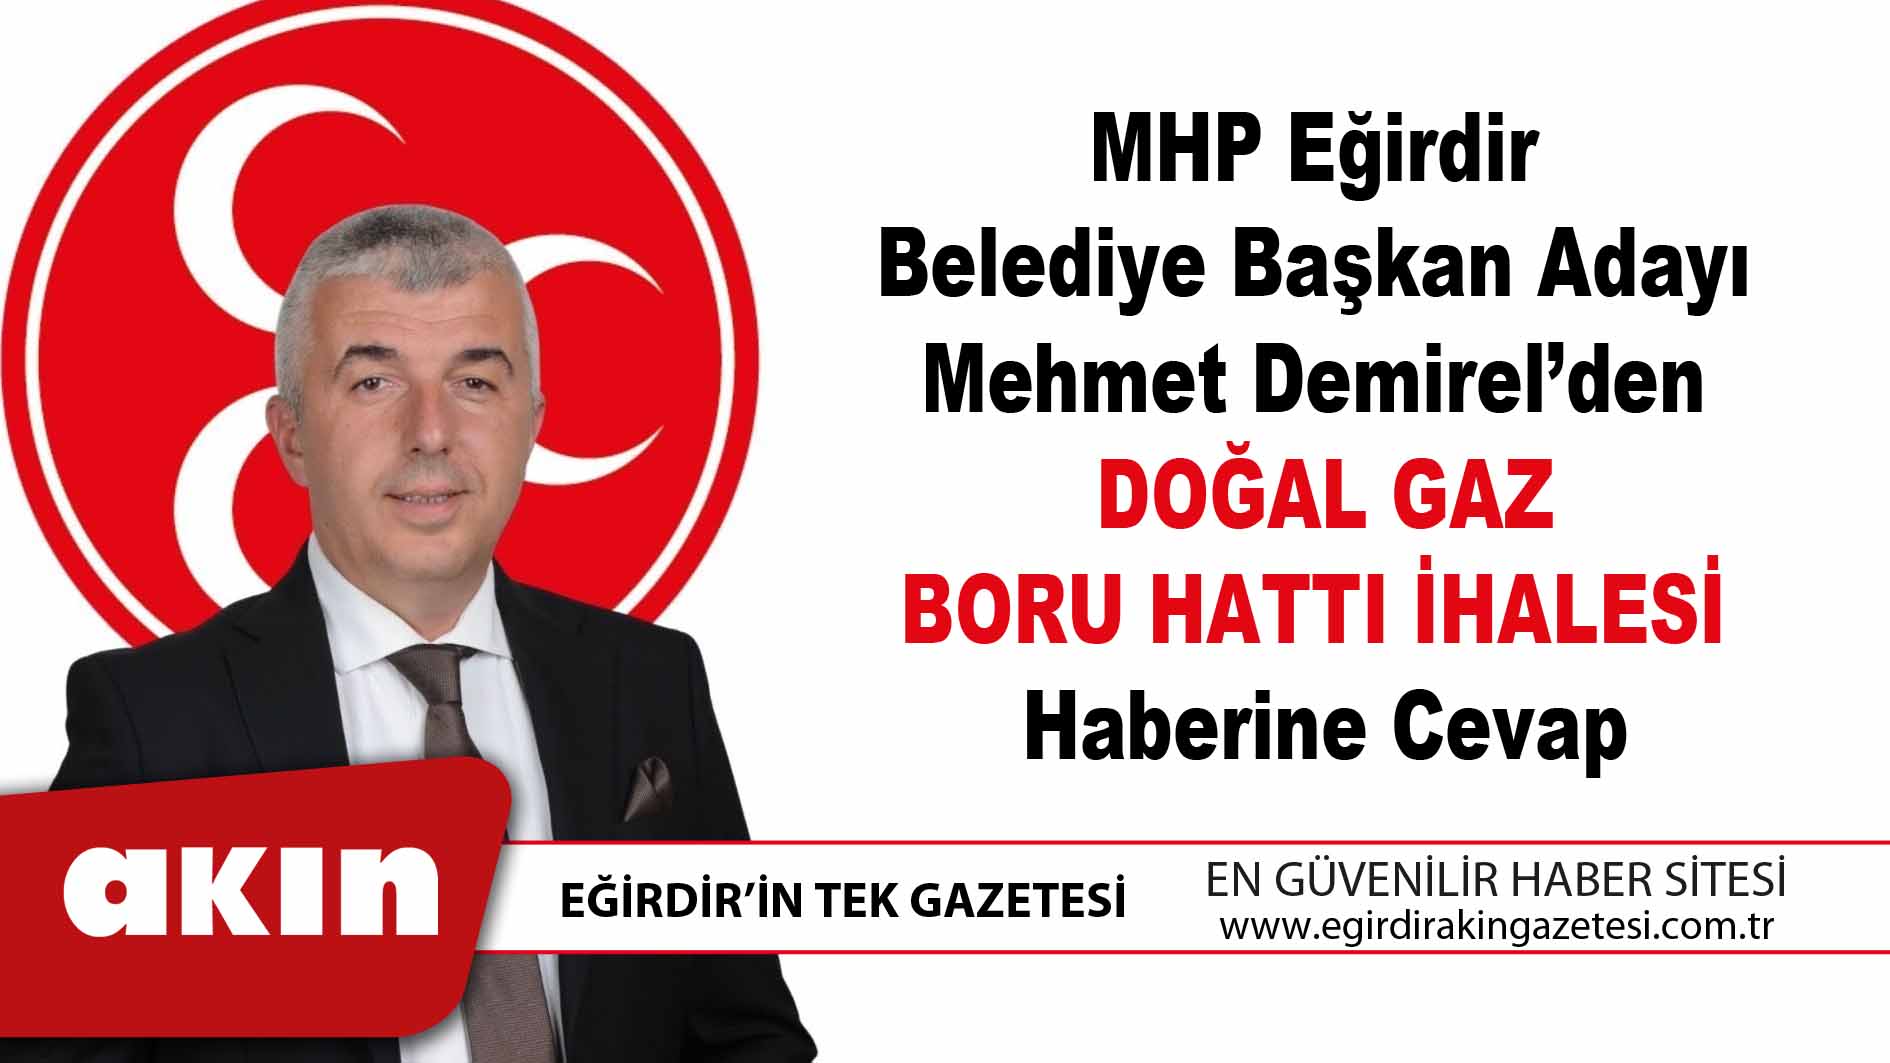 MHP Eğirdir Belediye Başkan Adayı Mehmet Demirel’den 